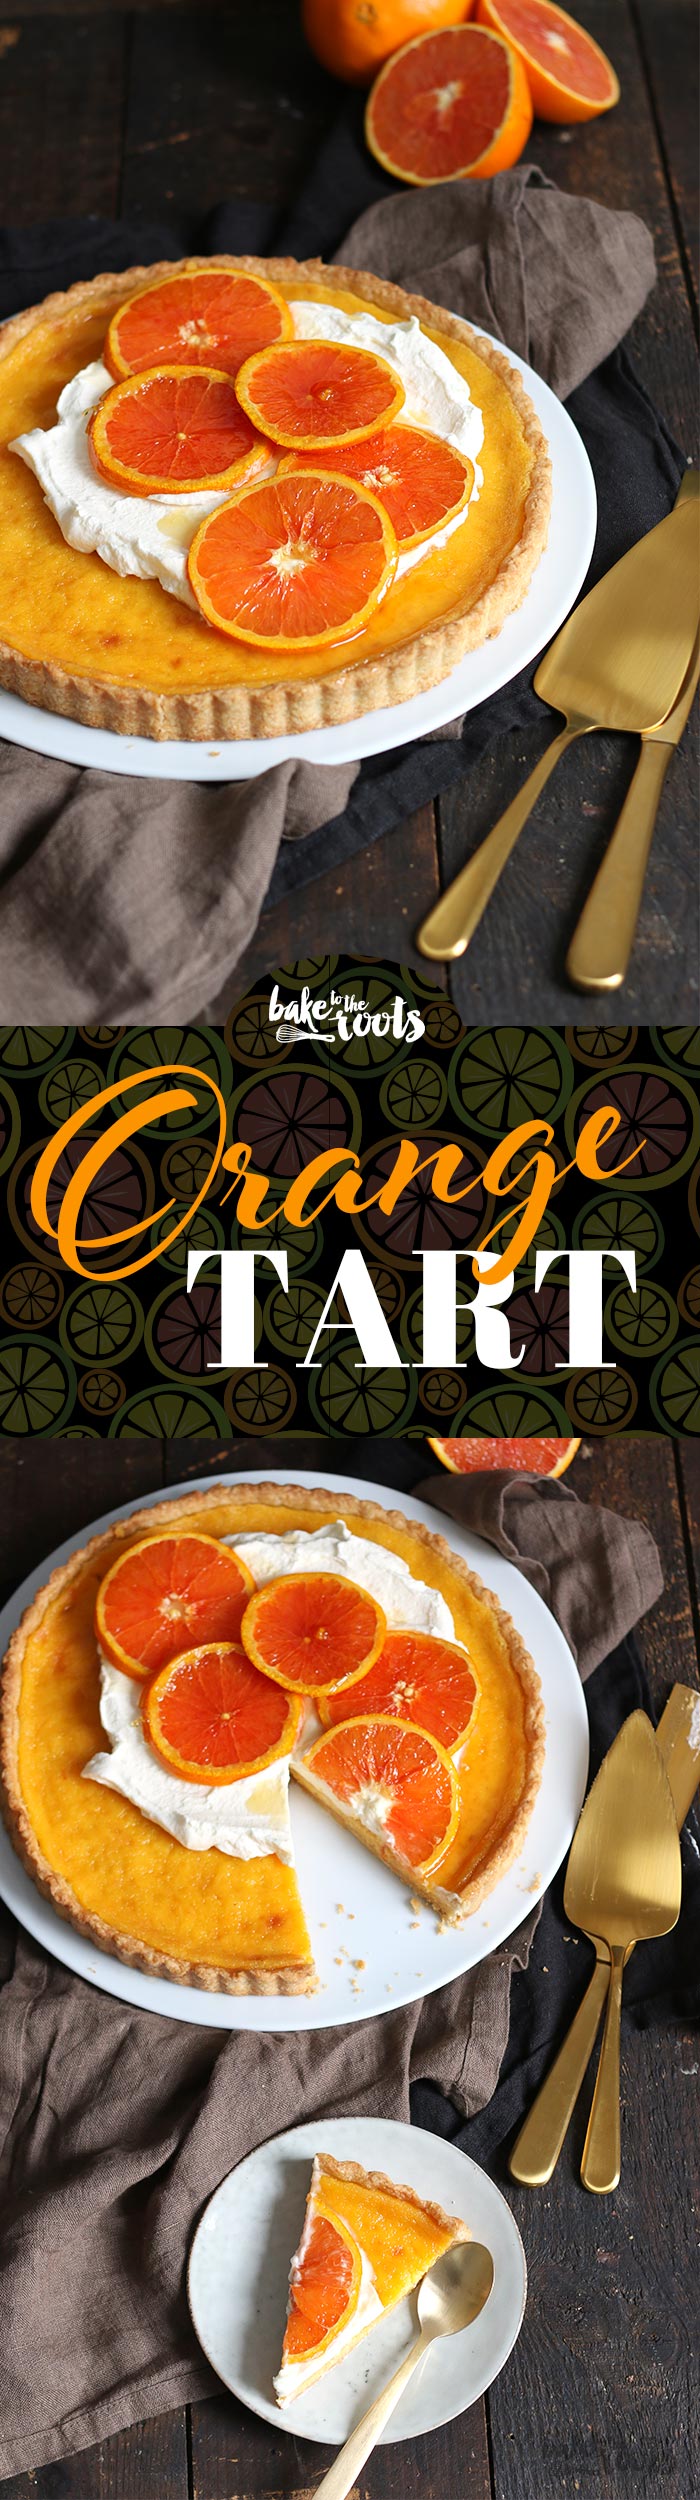 Lecker fruchtige Orangentarte mit karamellisierten Orangen und einem Hauch von Schlagsahne | Bake to the roots